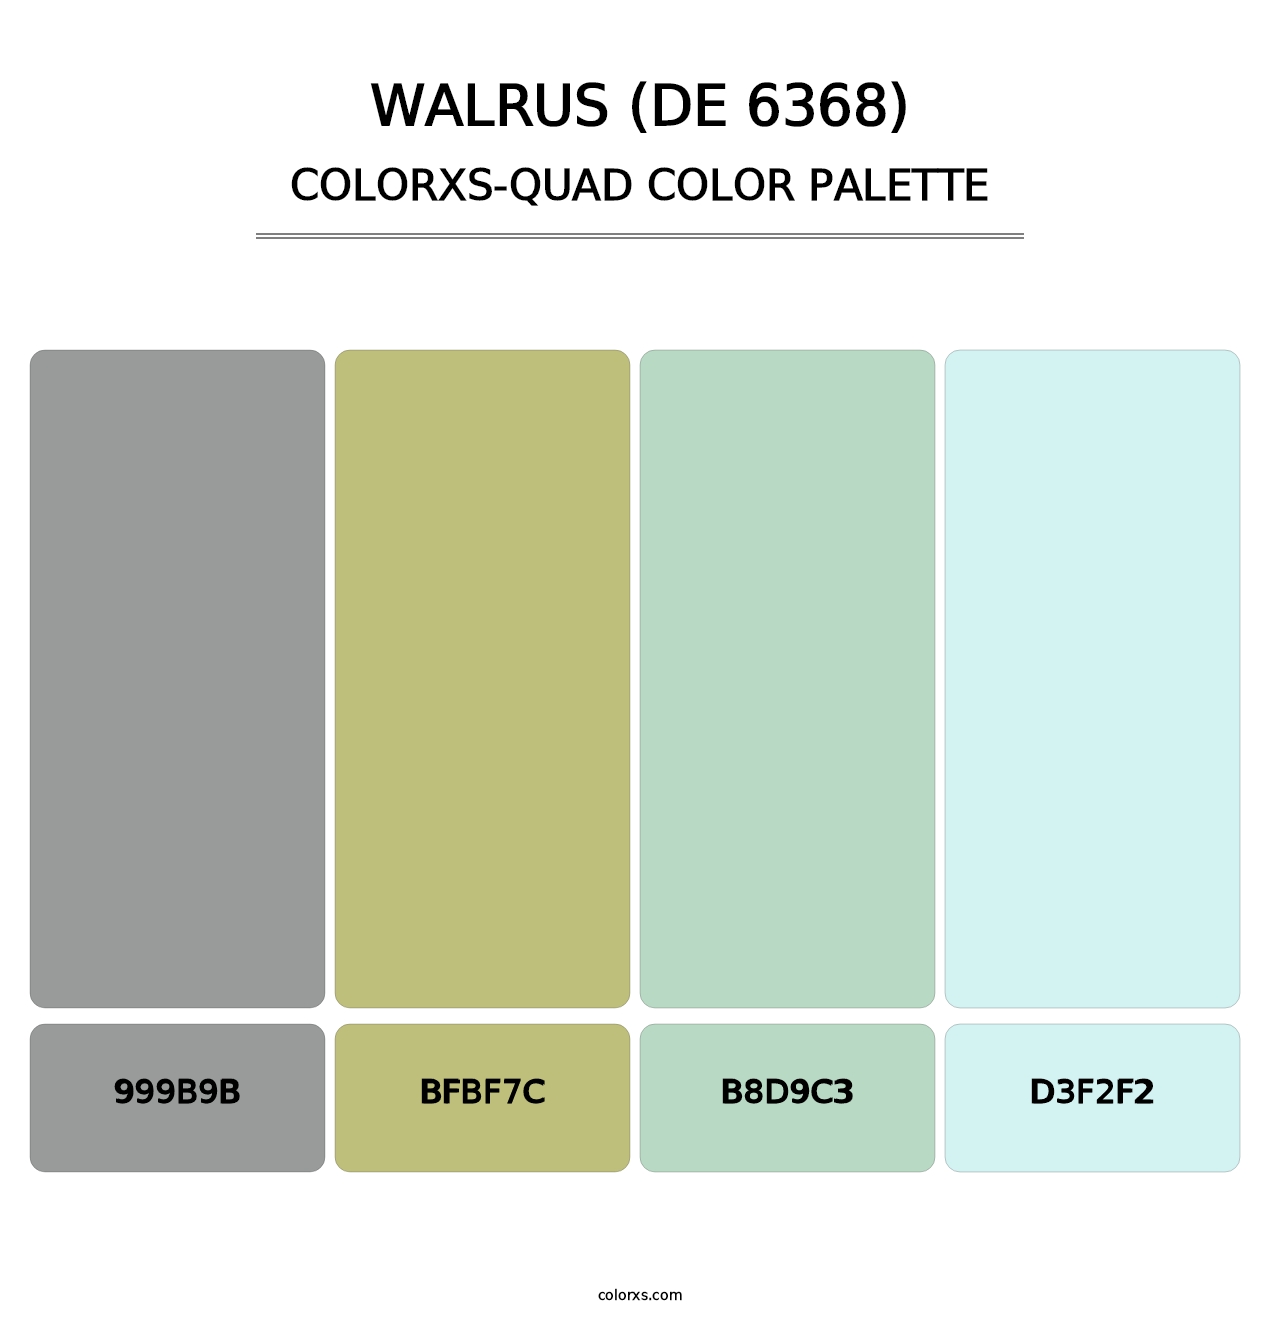 Walrus (DE 6368) - Colorxs Quad Palette